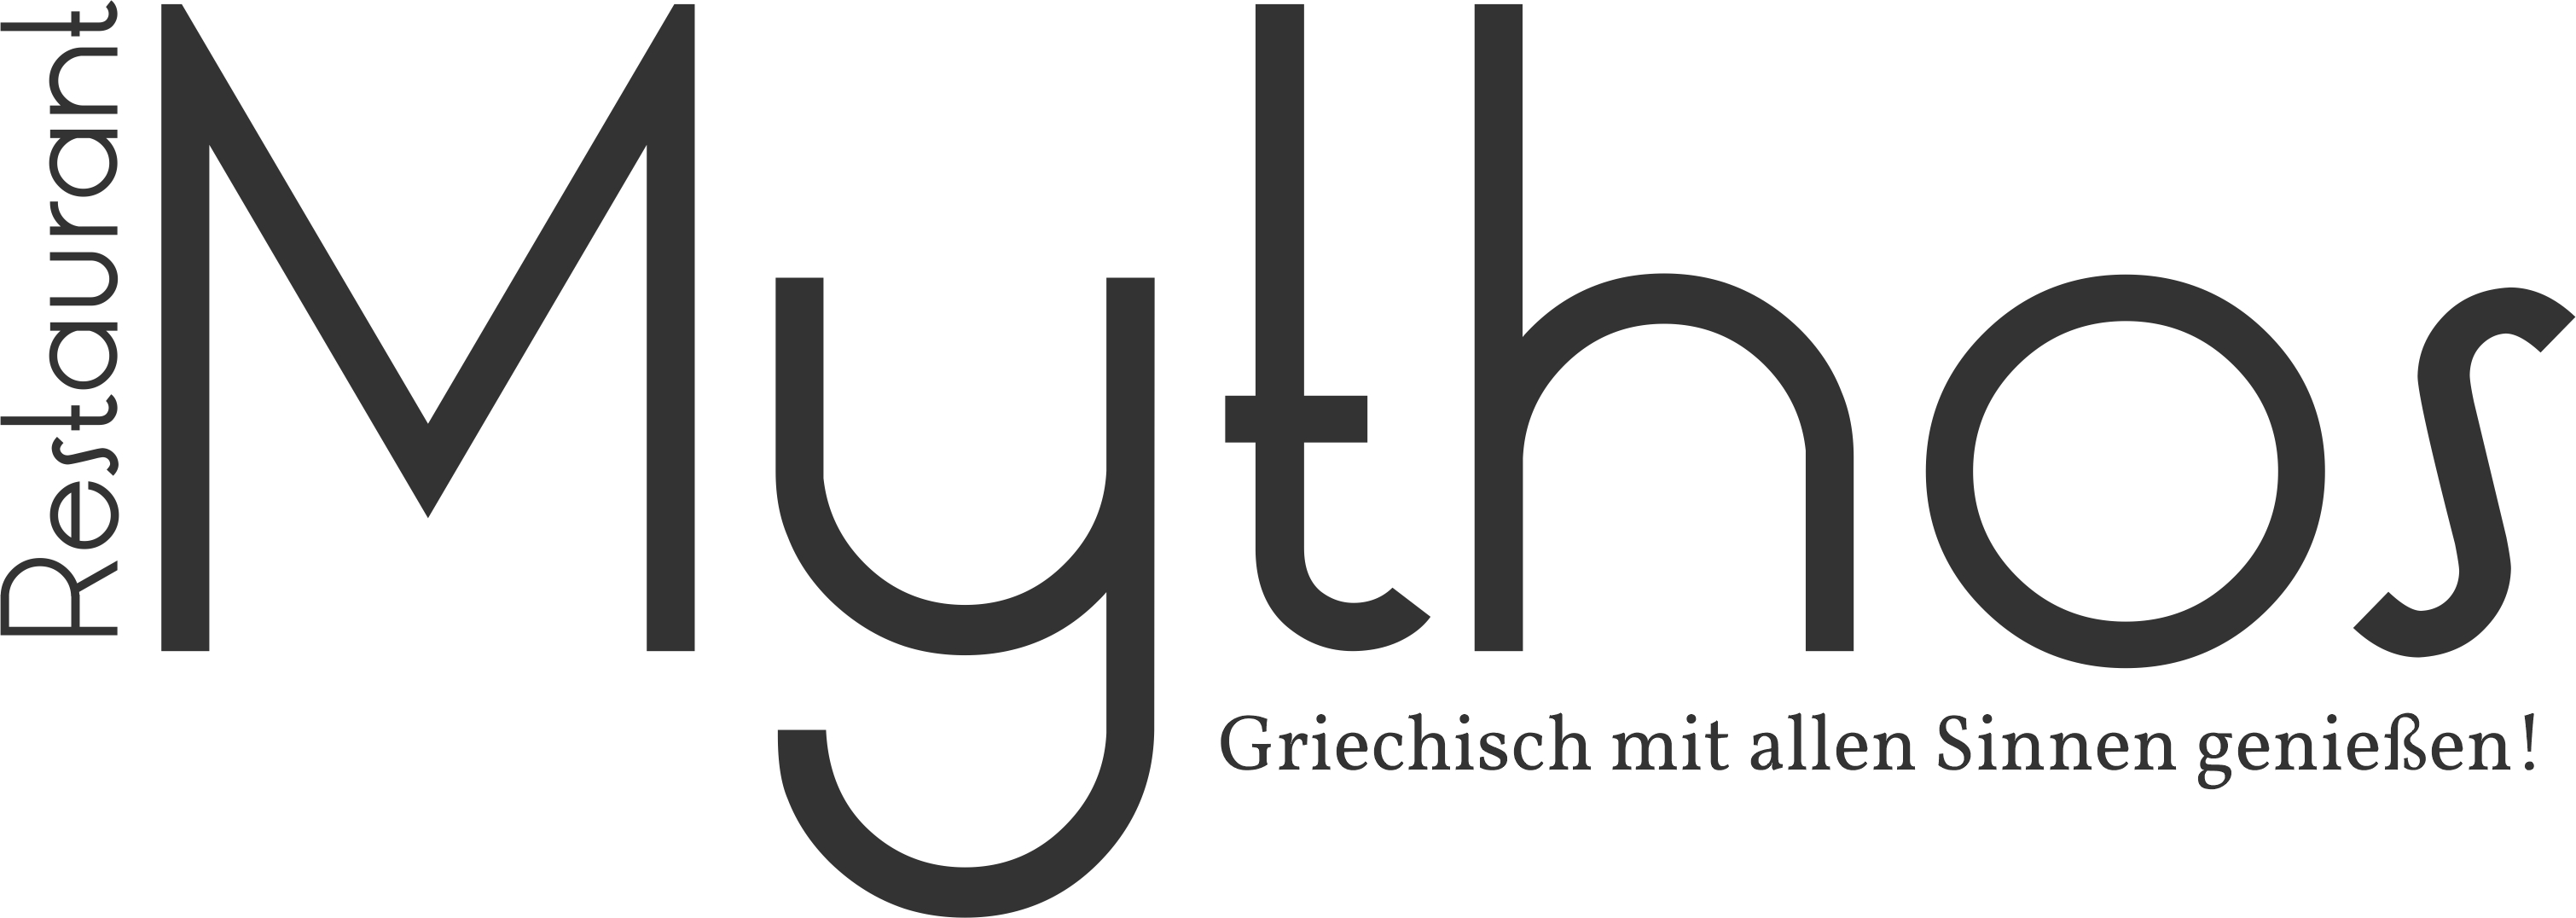 Logo der Firma Restaurant Mythos aus Nürnberg